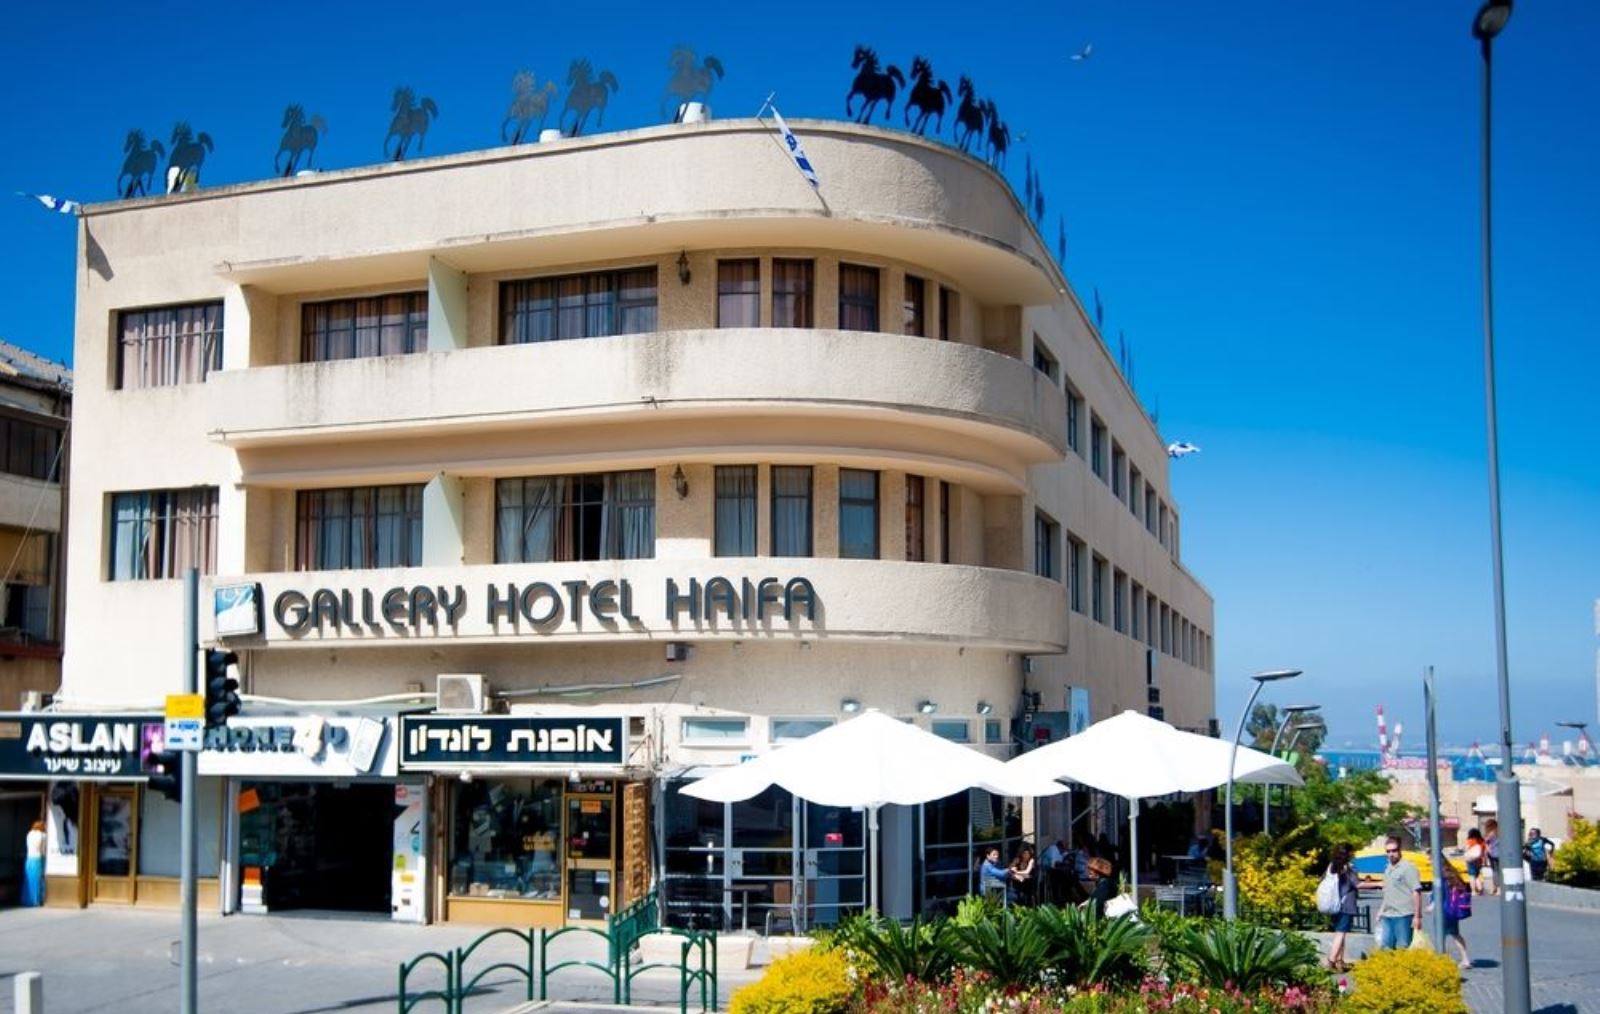 Art Gallery Hotel, Haifa. Photo: courtesy